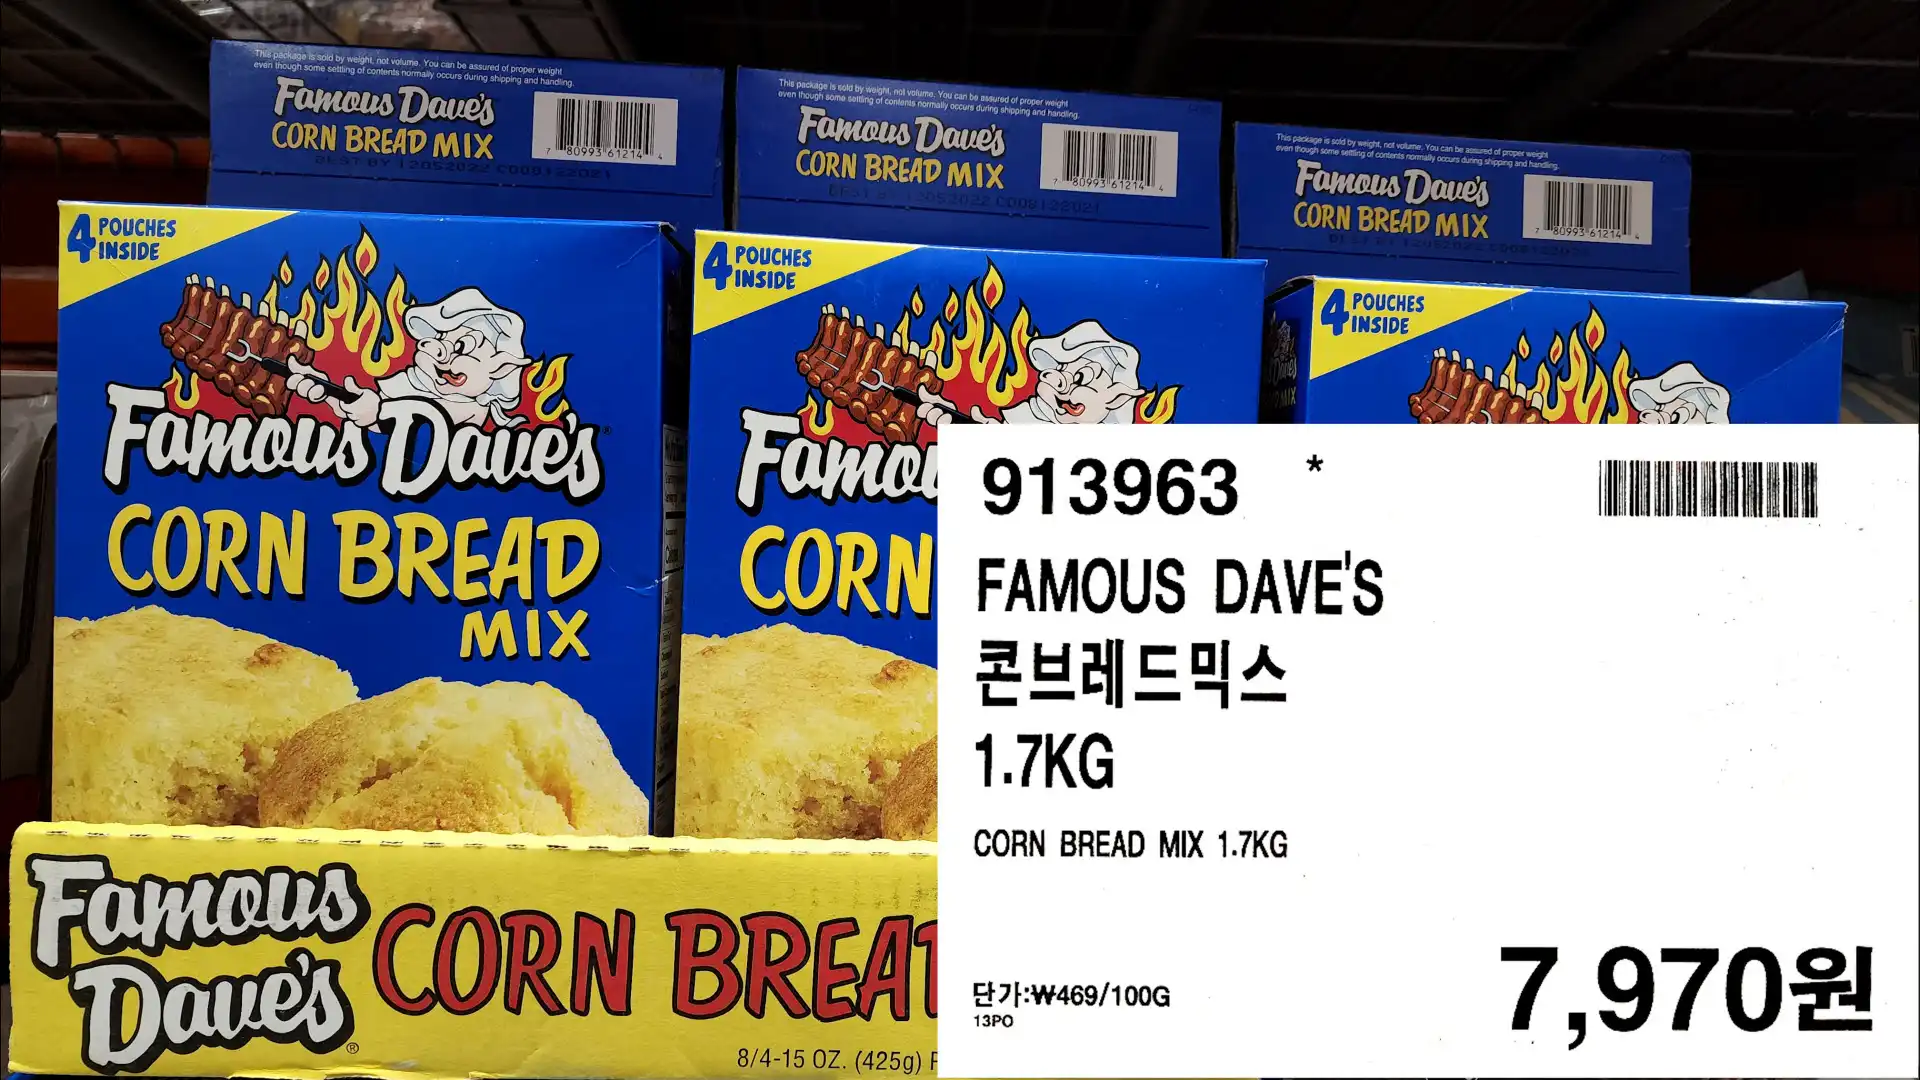 FAMOUS DAVE&#39;S
콘브레드믹스
1.7KG
CORN BREAD MIX 1.7KG
단가:W469/100G
7&#44;970원